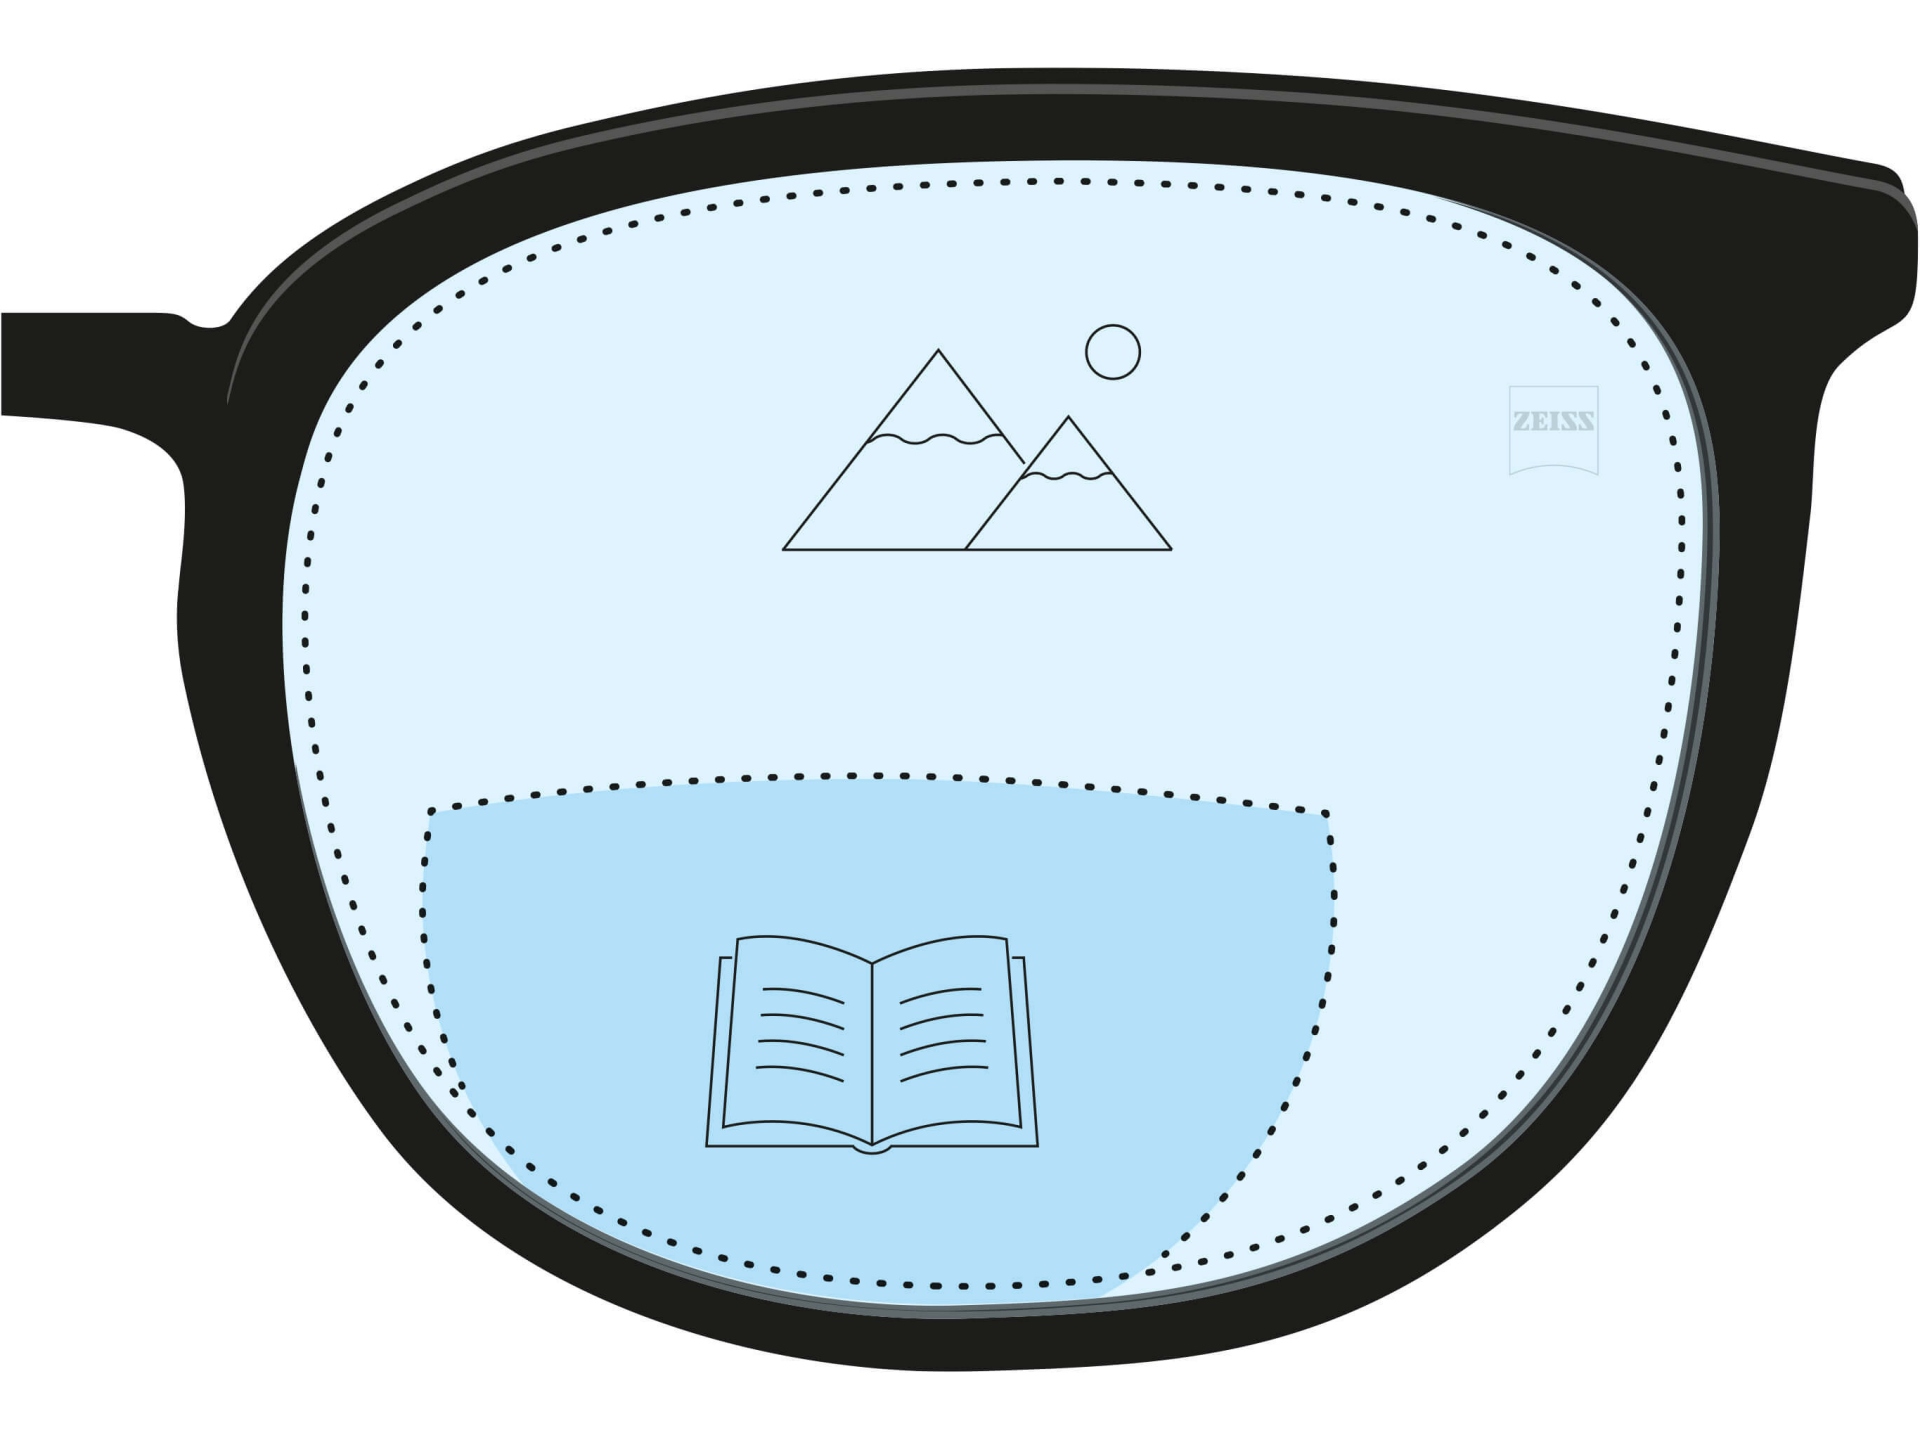 双焦点镜片的插图。深蓝色区域表示老花镜片区域，淡蓝色部分表示近视眼镜区域